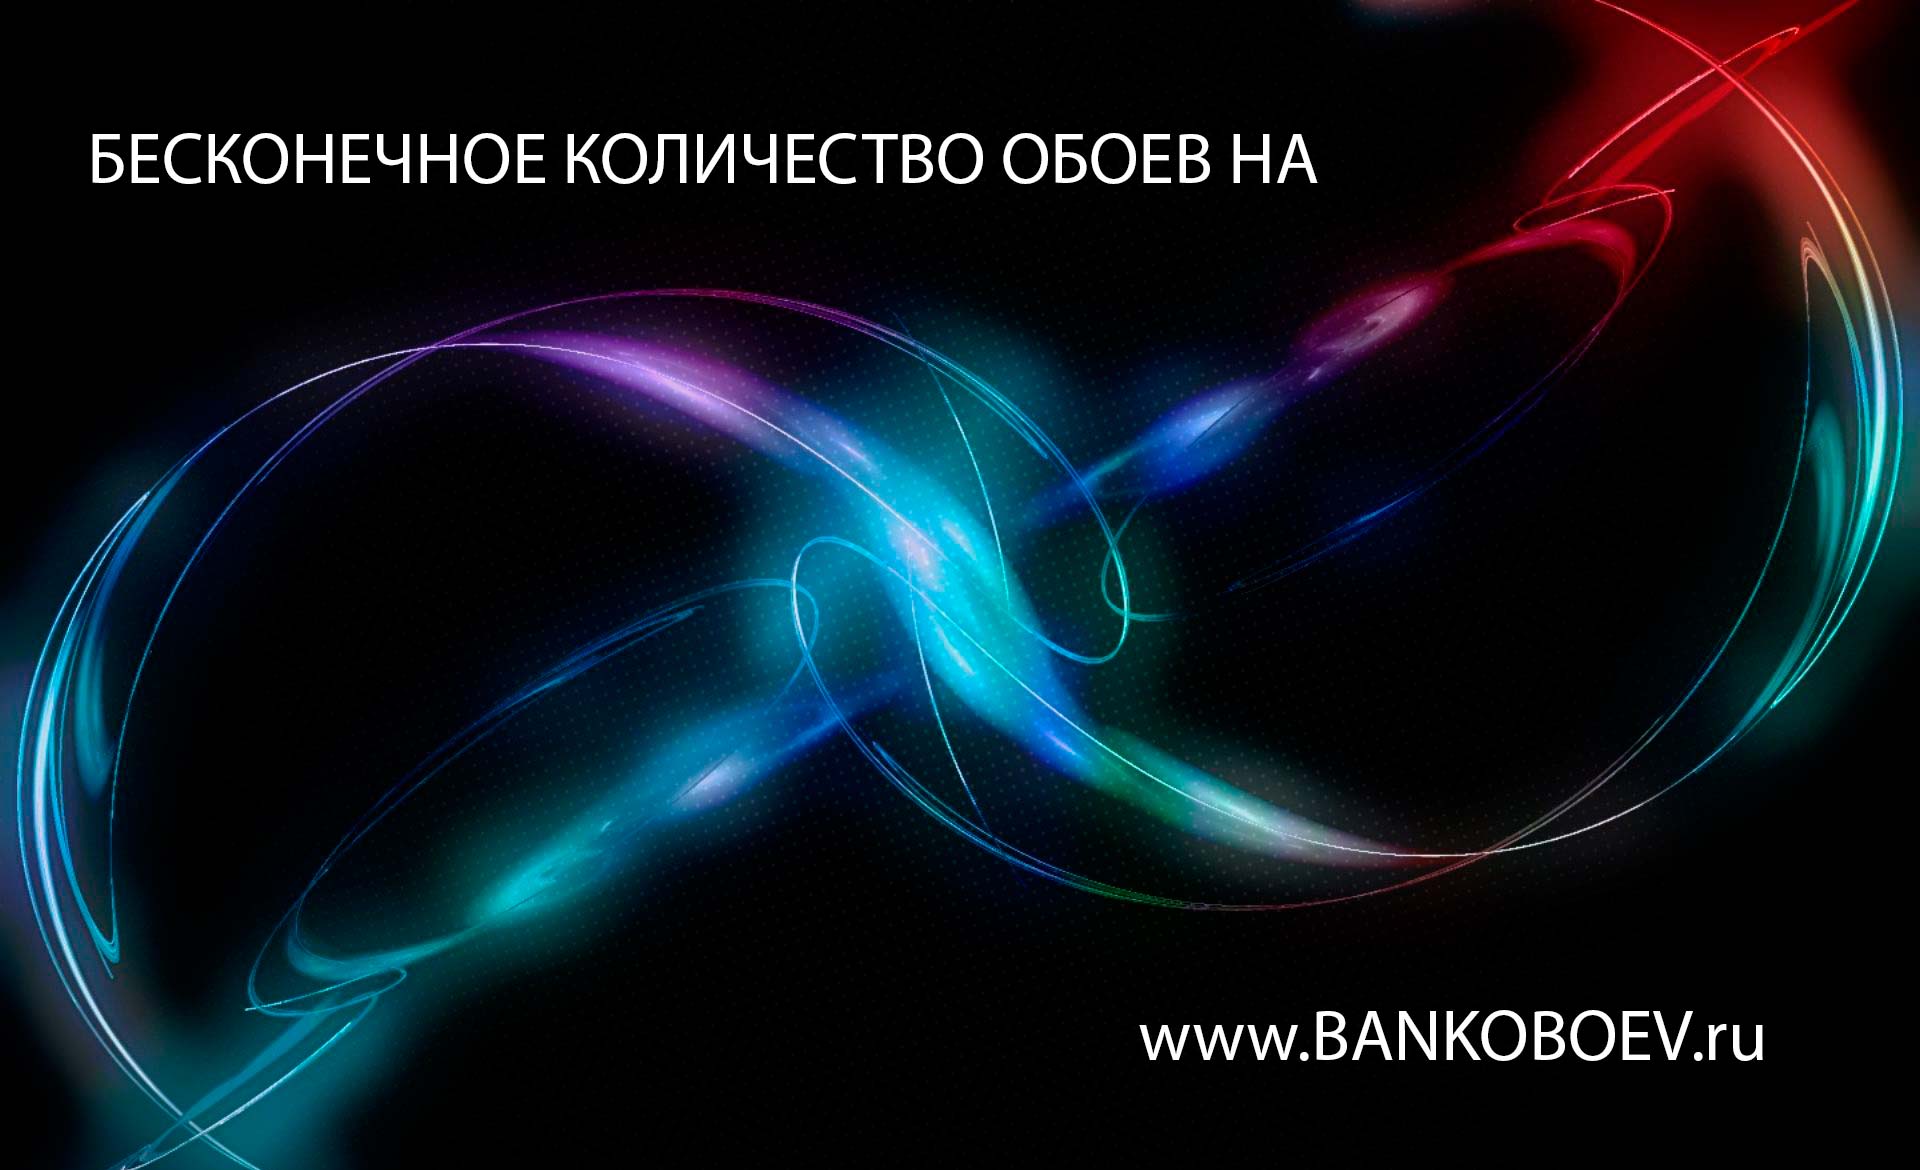 Source Bankoboev Ru Image Mjc1ndu5